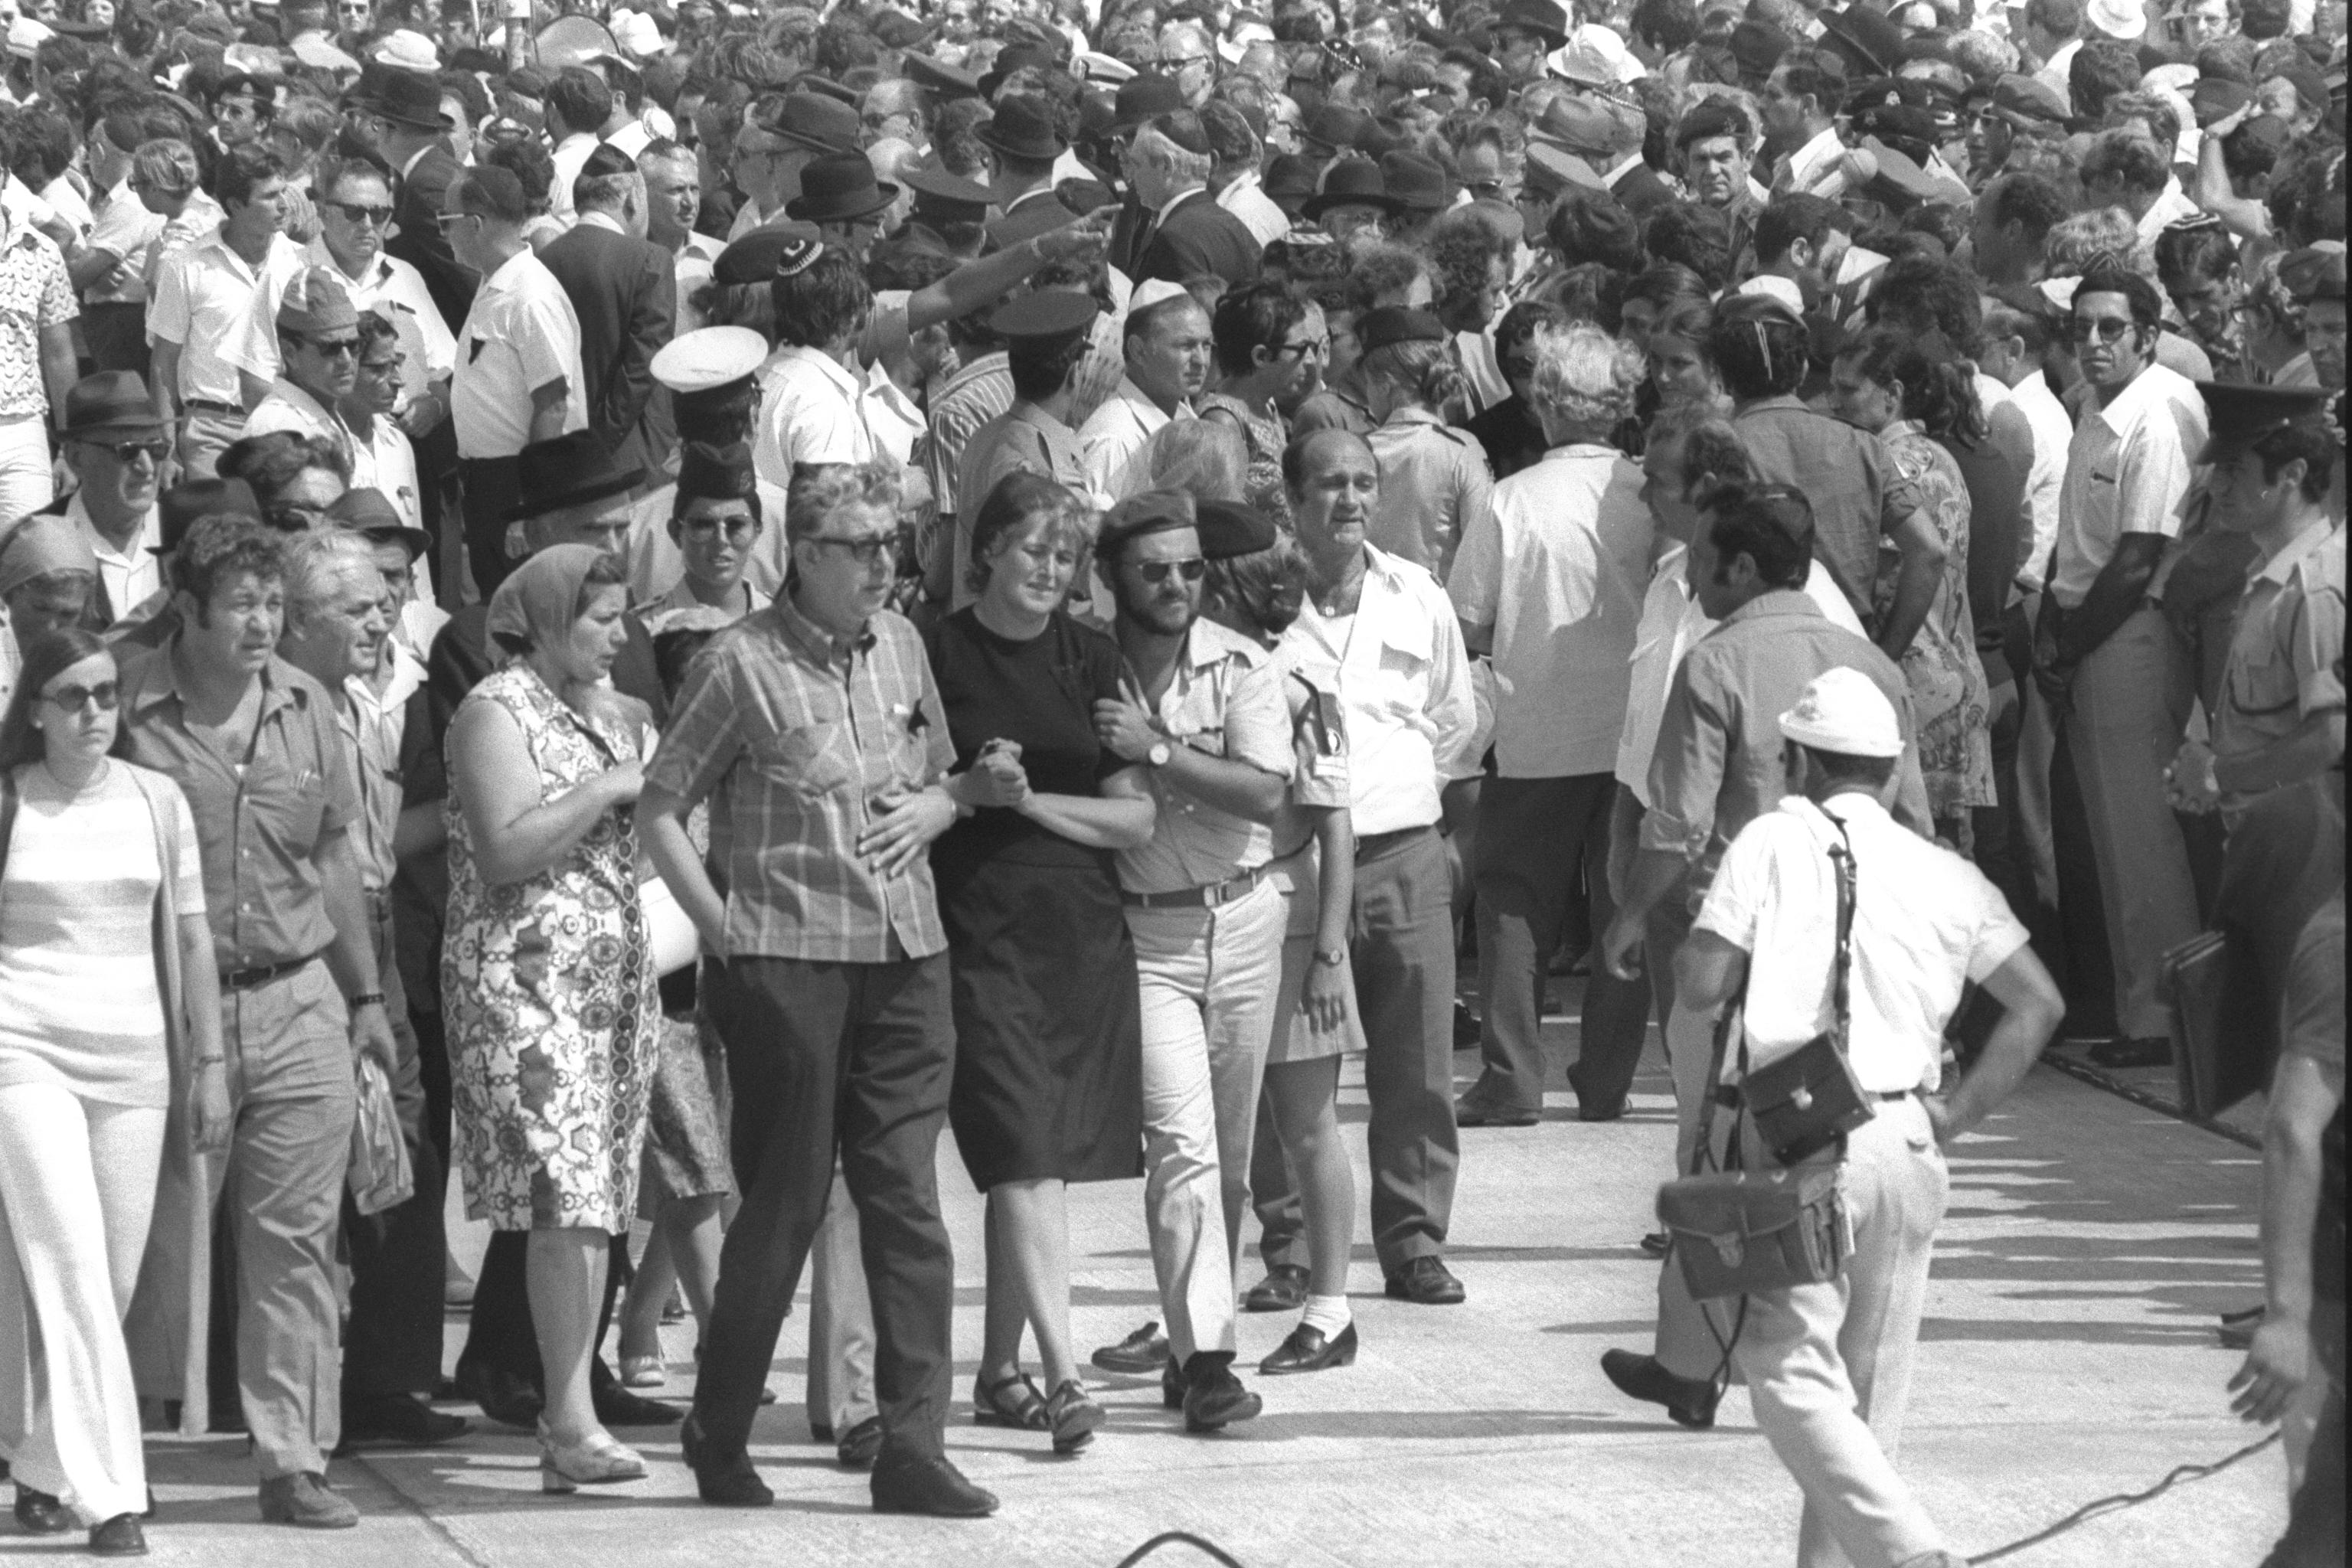 <p>קרוביהם האבלים של קורבנות הטבח במינכן מגיעים לעצרת הזכרון לפני הלוויות בבית הקברות, 7.9.1972. צילום: דוד אלדן, אוסף התצלומים הלאומי</p>